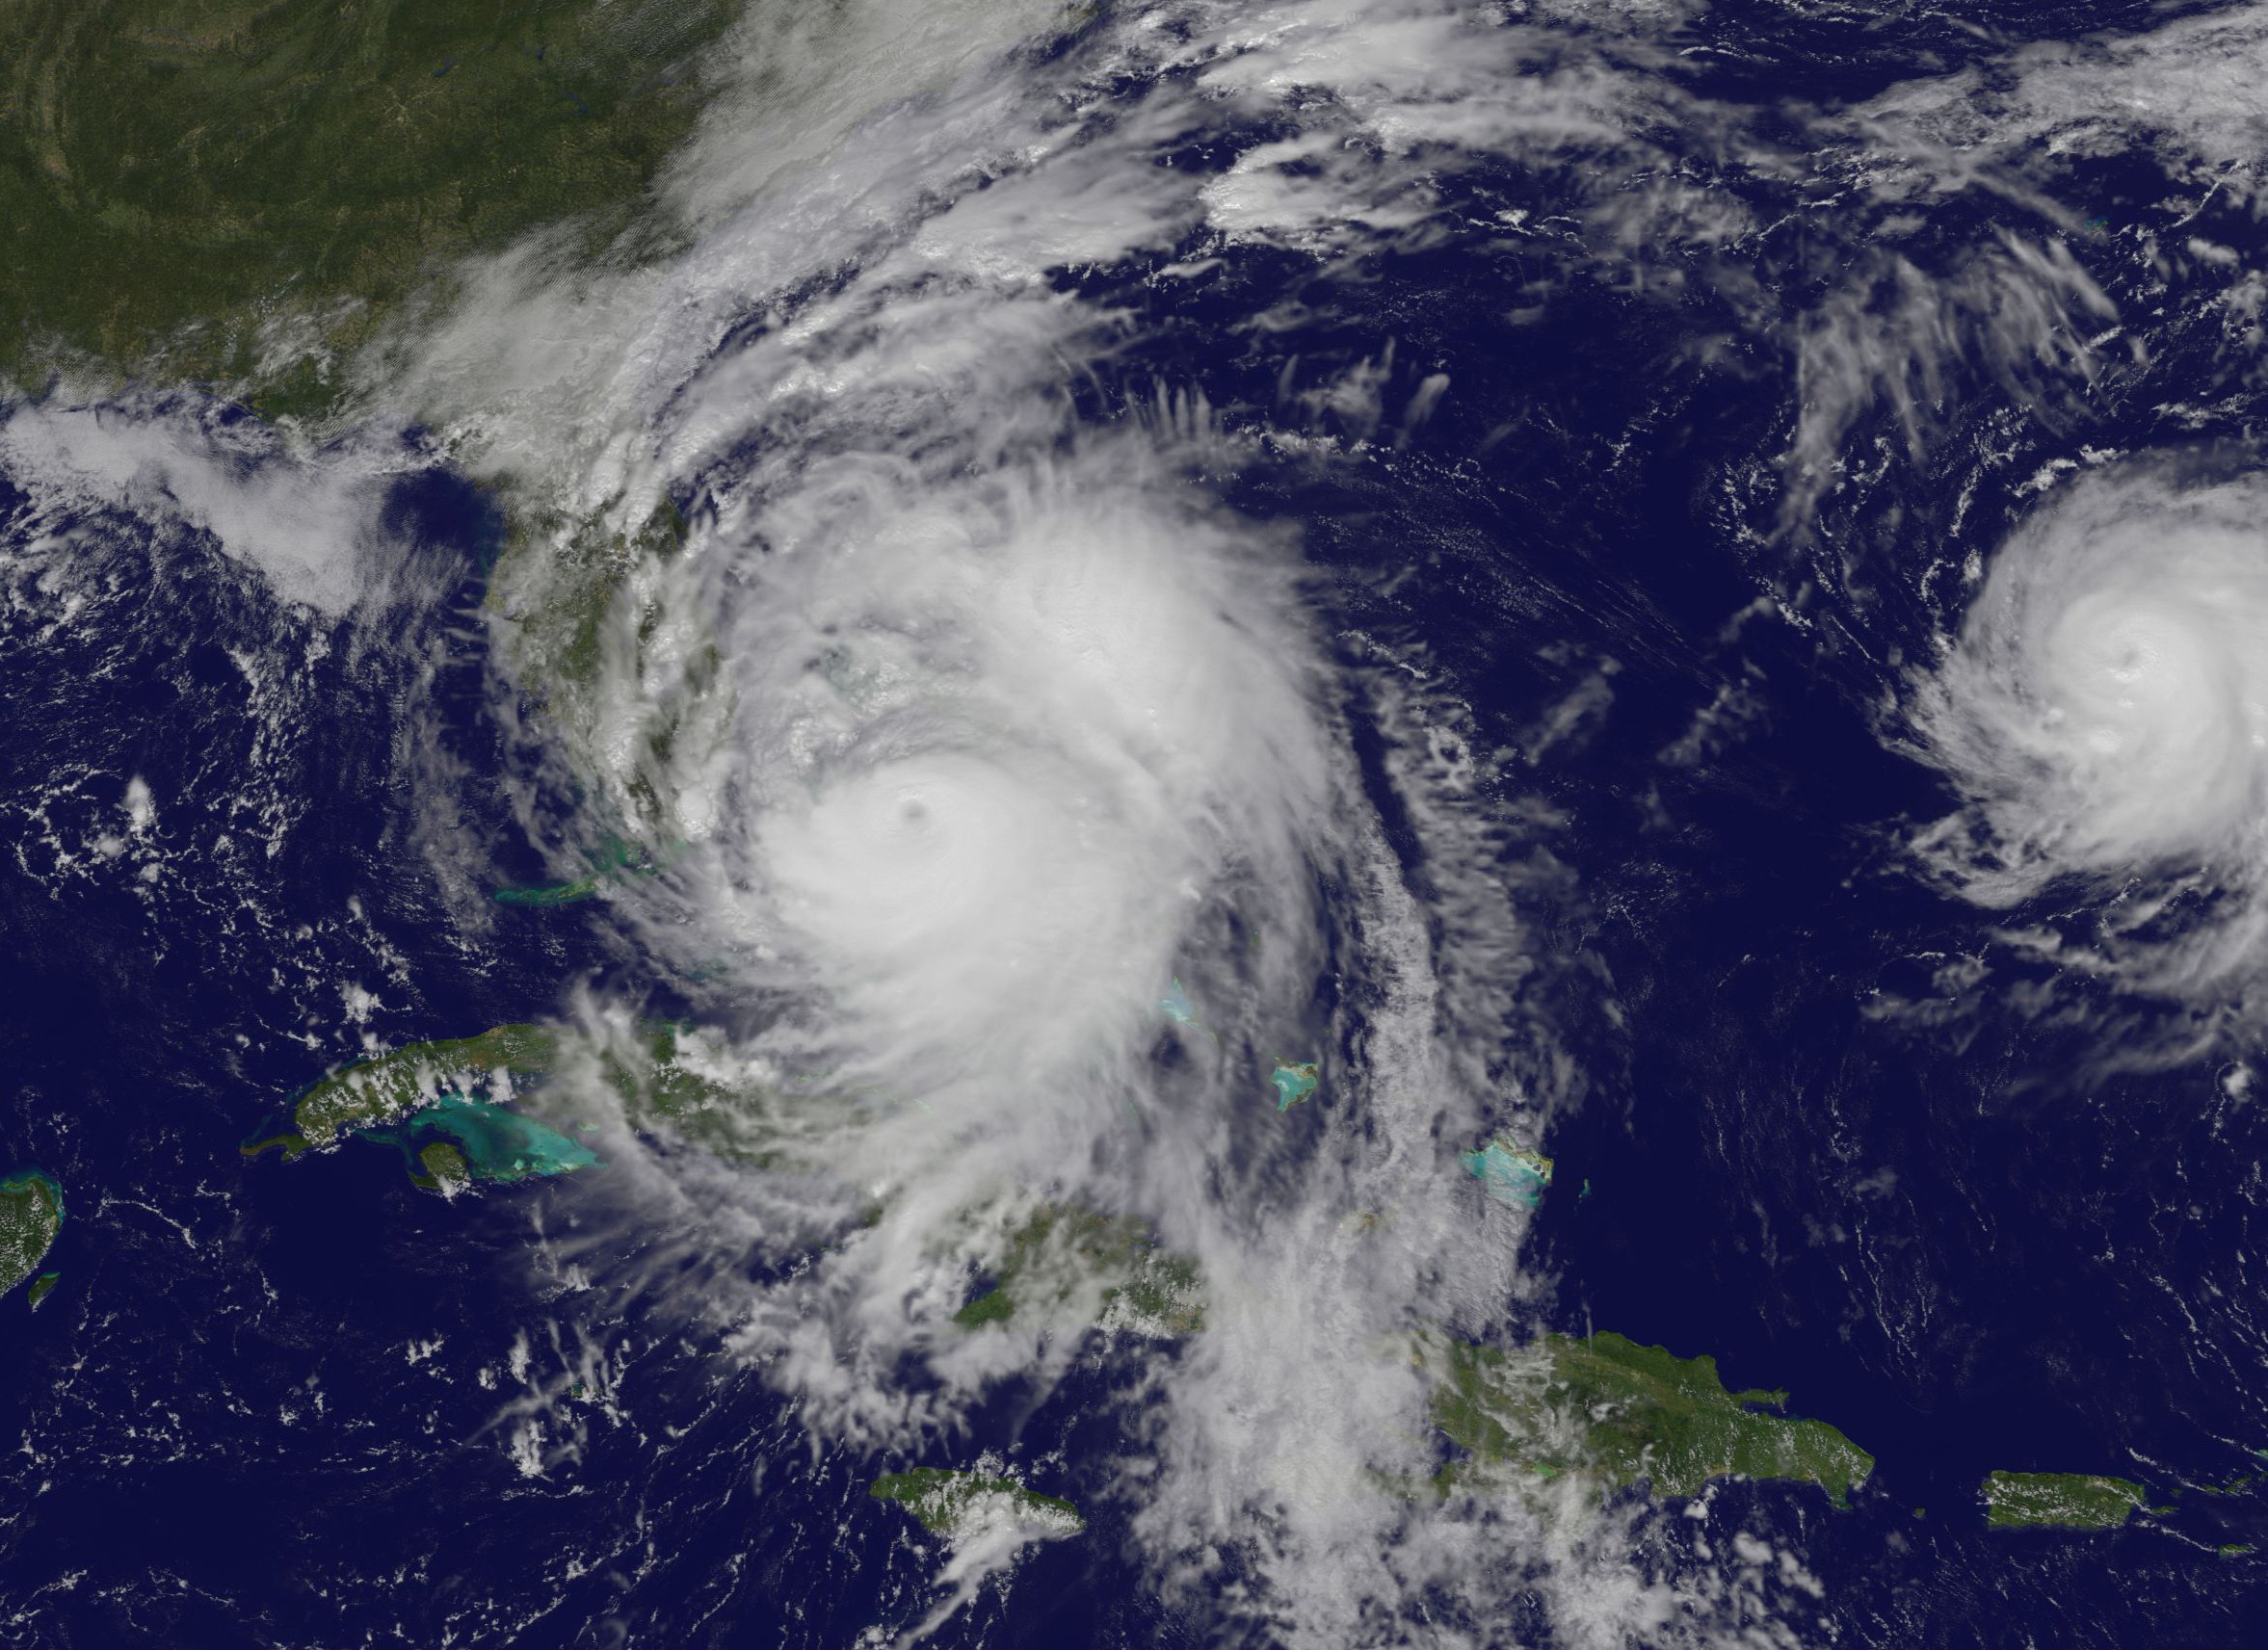 Furacão é de categoria 4 e deve atingir a Flórida nos próximos dias (Foto: NASA/NOAA GOES Project)